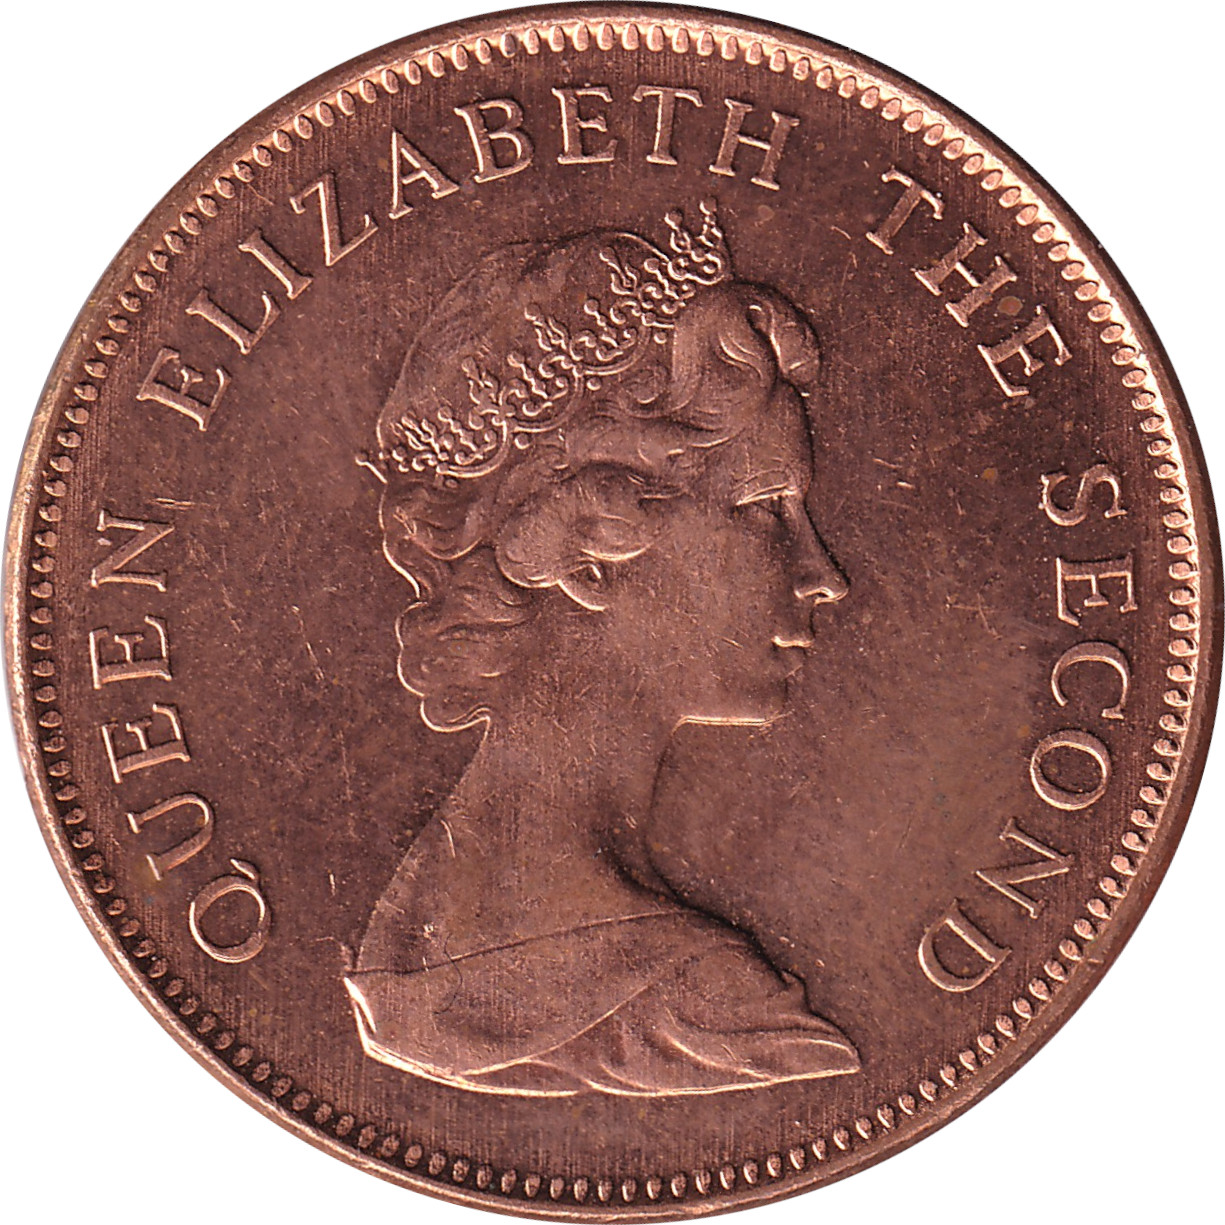 2 pence - Elizabeth II - Young bust